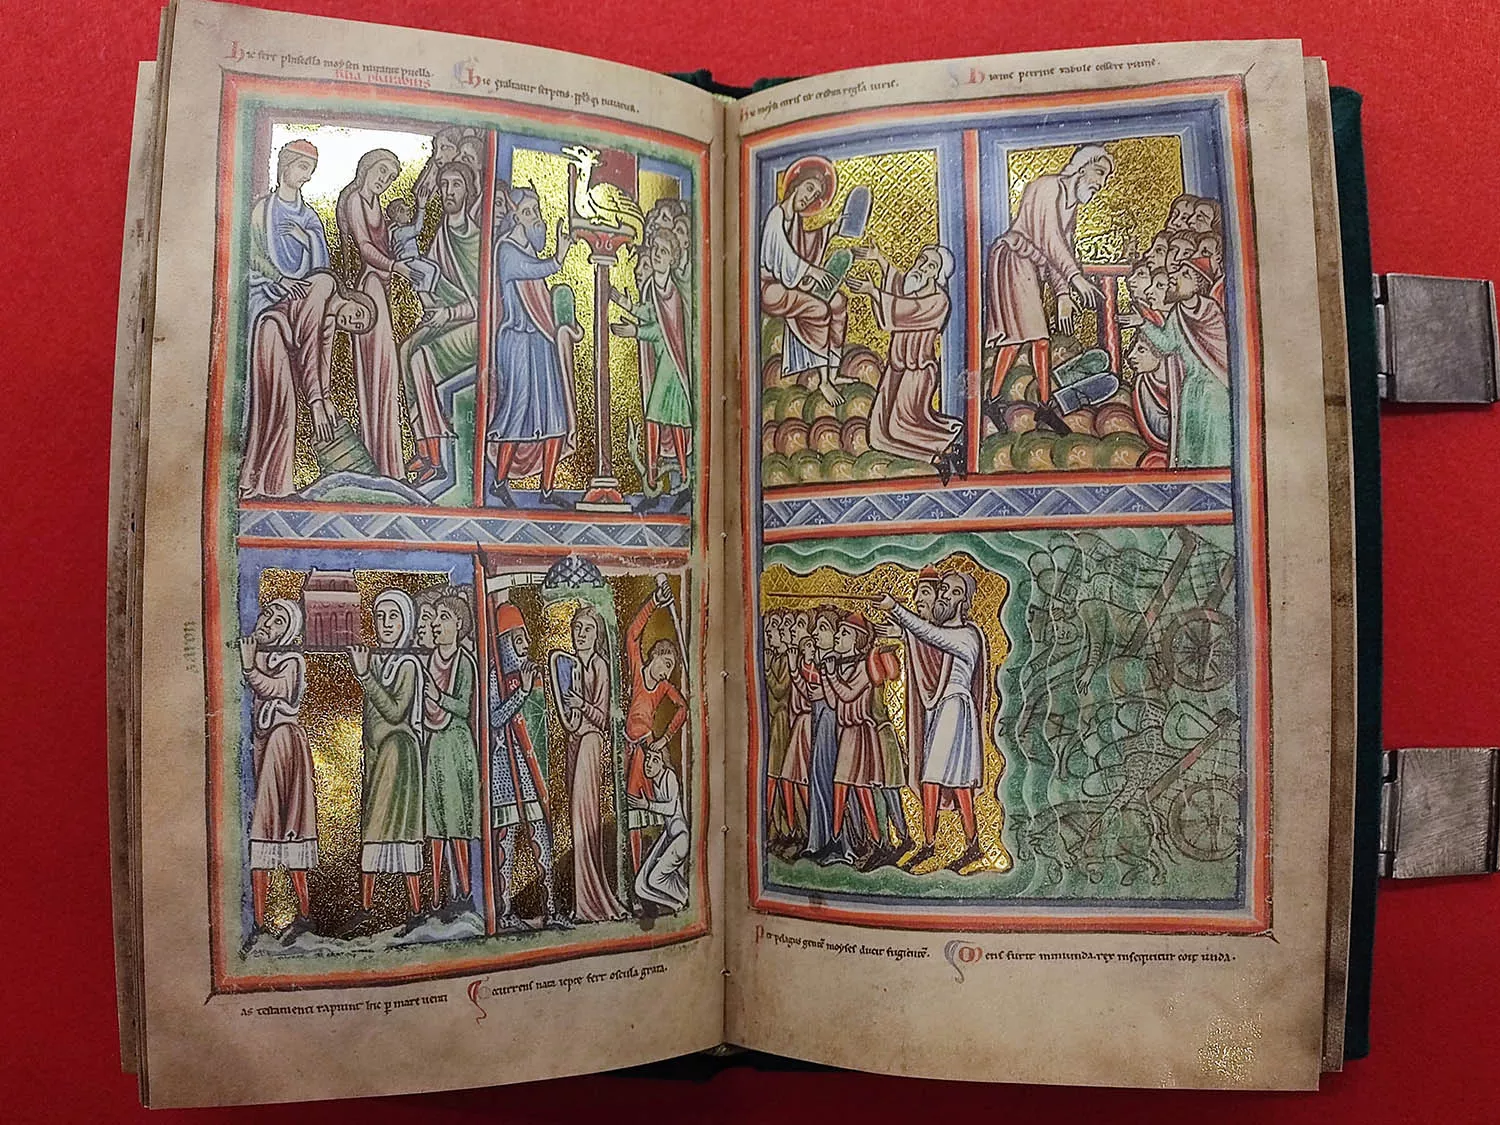 Libros para esta Navidad de la biblioterca del Castillo de los Templarios de Ponferrada 4